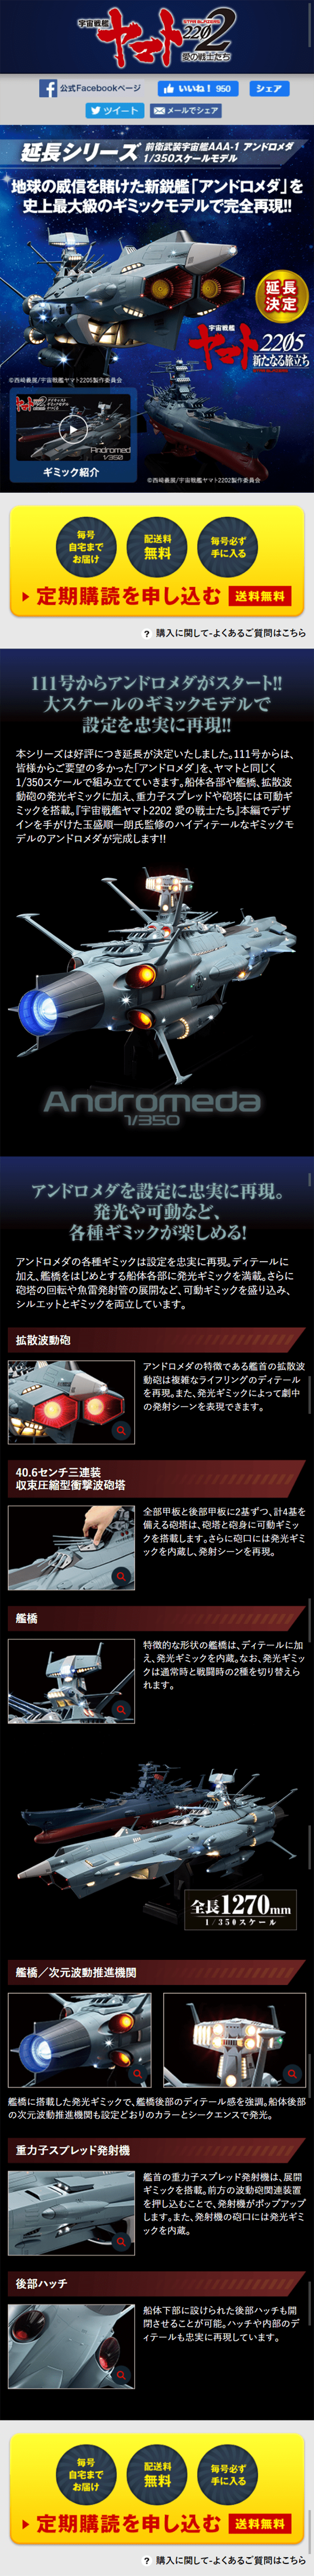 宇宙戦艦ヤマト ダイキャストギミックモデルをつくる_sp_1